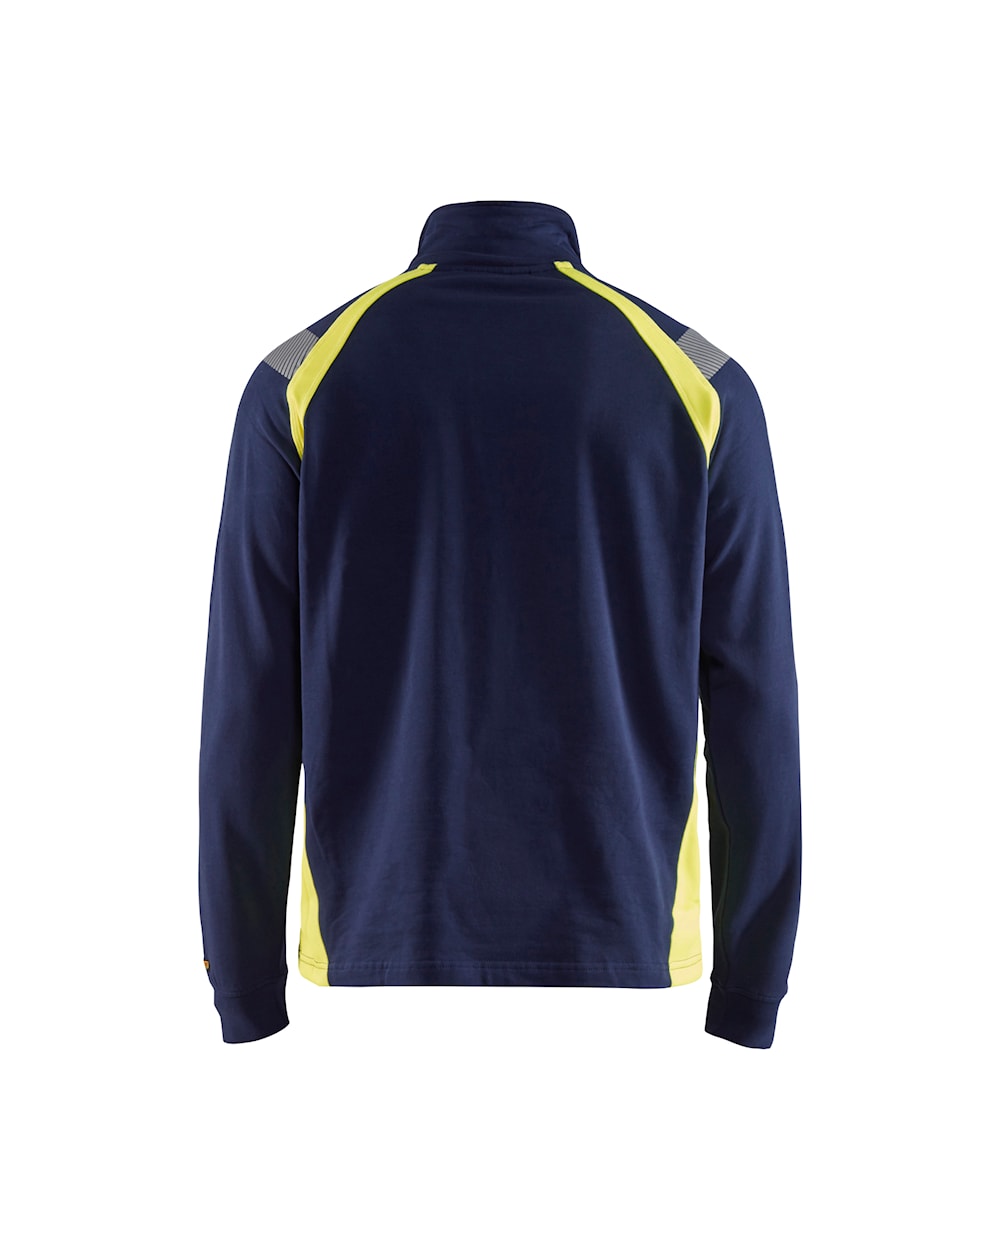 Blaklader Sweatshirt with Half Zip 3432 #colour_navy-blue-hi-vis-yellow